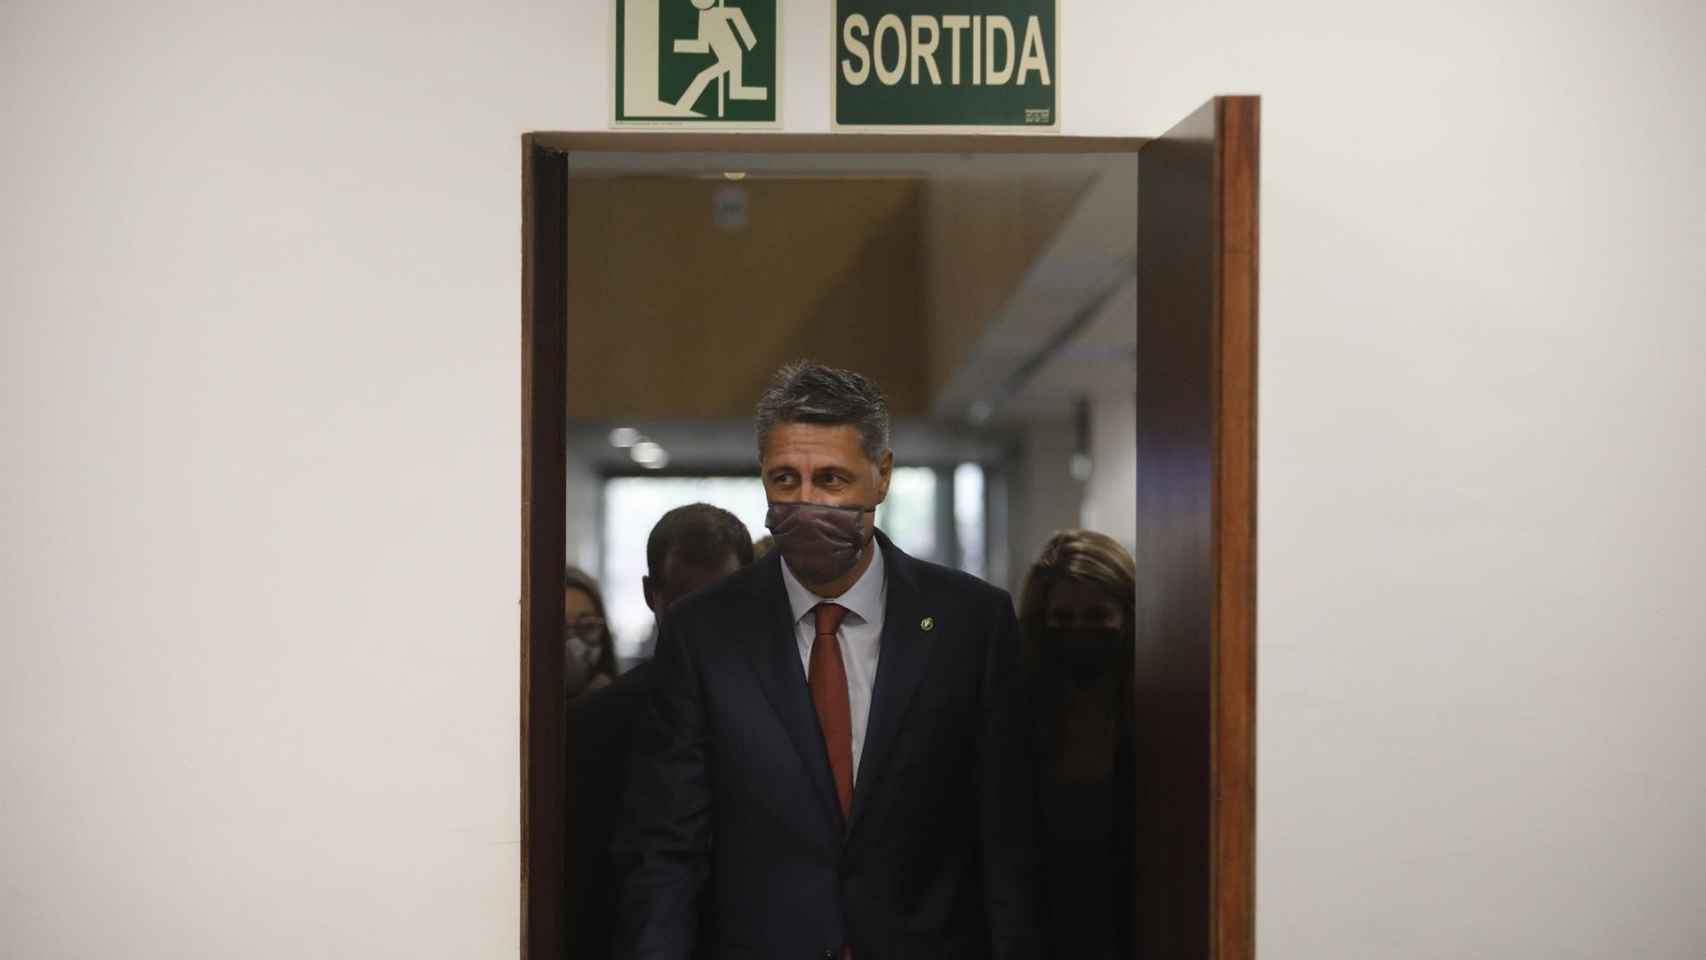 El alcalde de Badalona,, Xavier García Albiol (PP), durante su comparecencia tras registrarse la moción de censura para desplazarlo del cargo. - KIKE RINCÓN- EUROPA PRESS